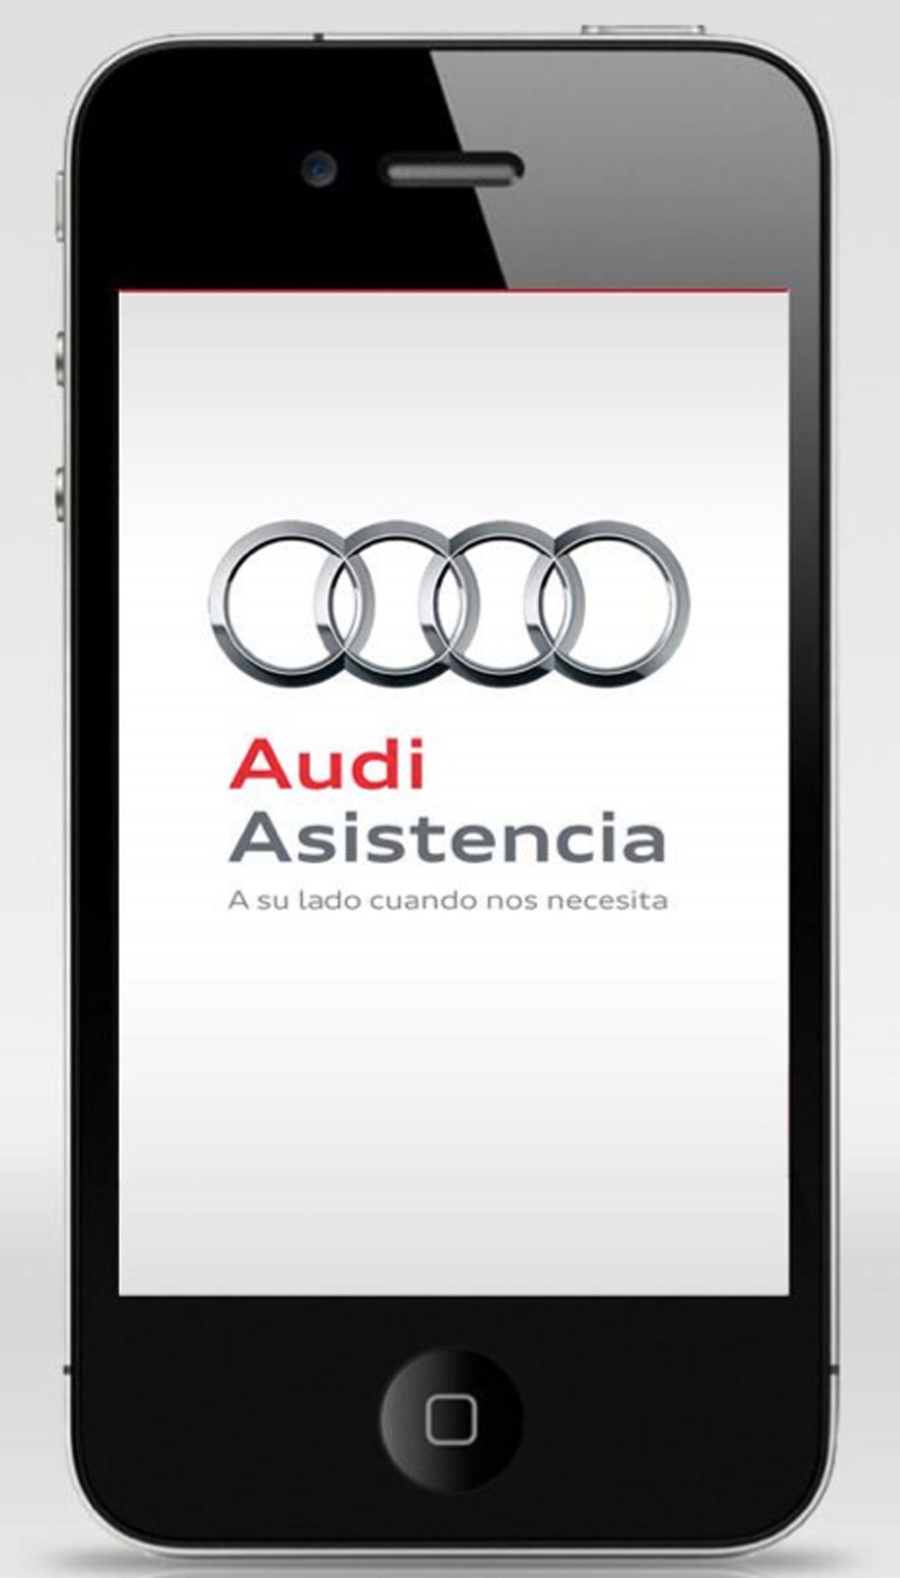 Audi lanza una aplicación para smartphones que facilita la asistencia técnica